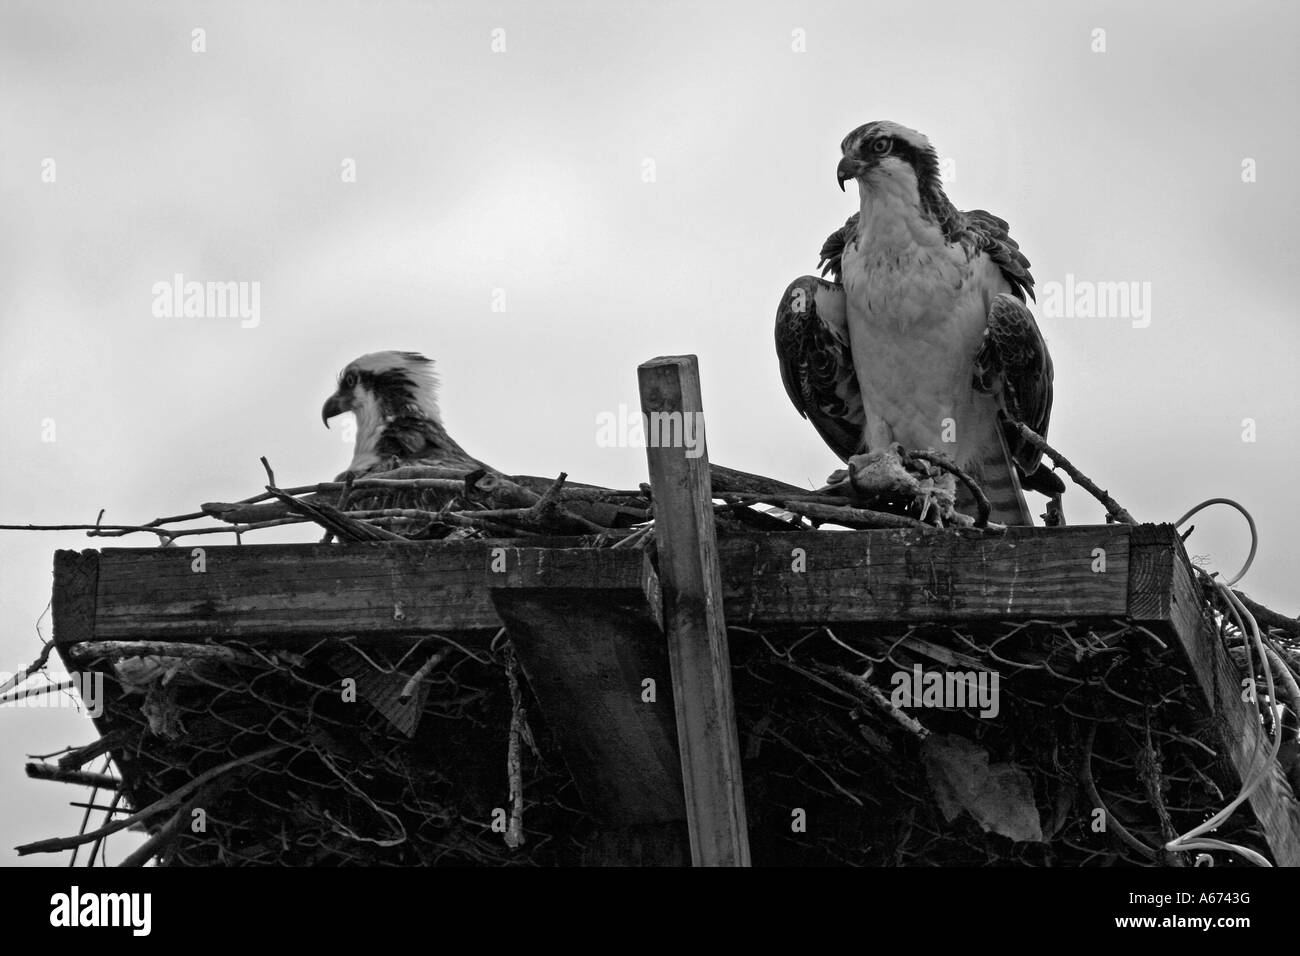 Par de águilas pescadoras que anidan en Fort Myers Beach, Florida, Blanco y negro Foto de stock